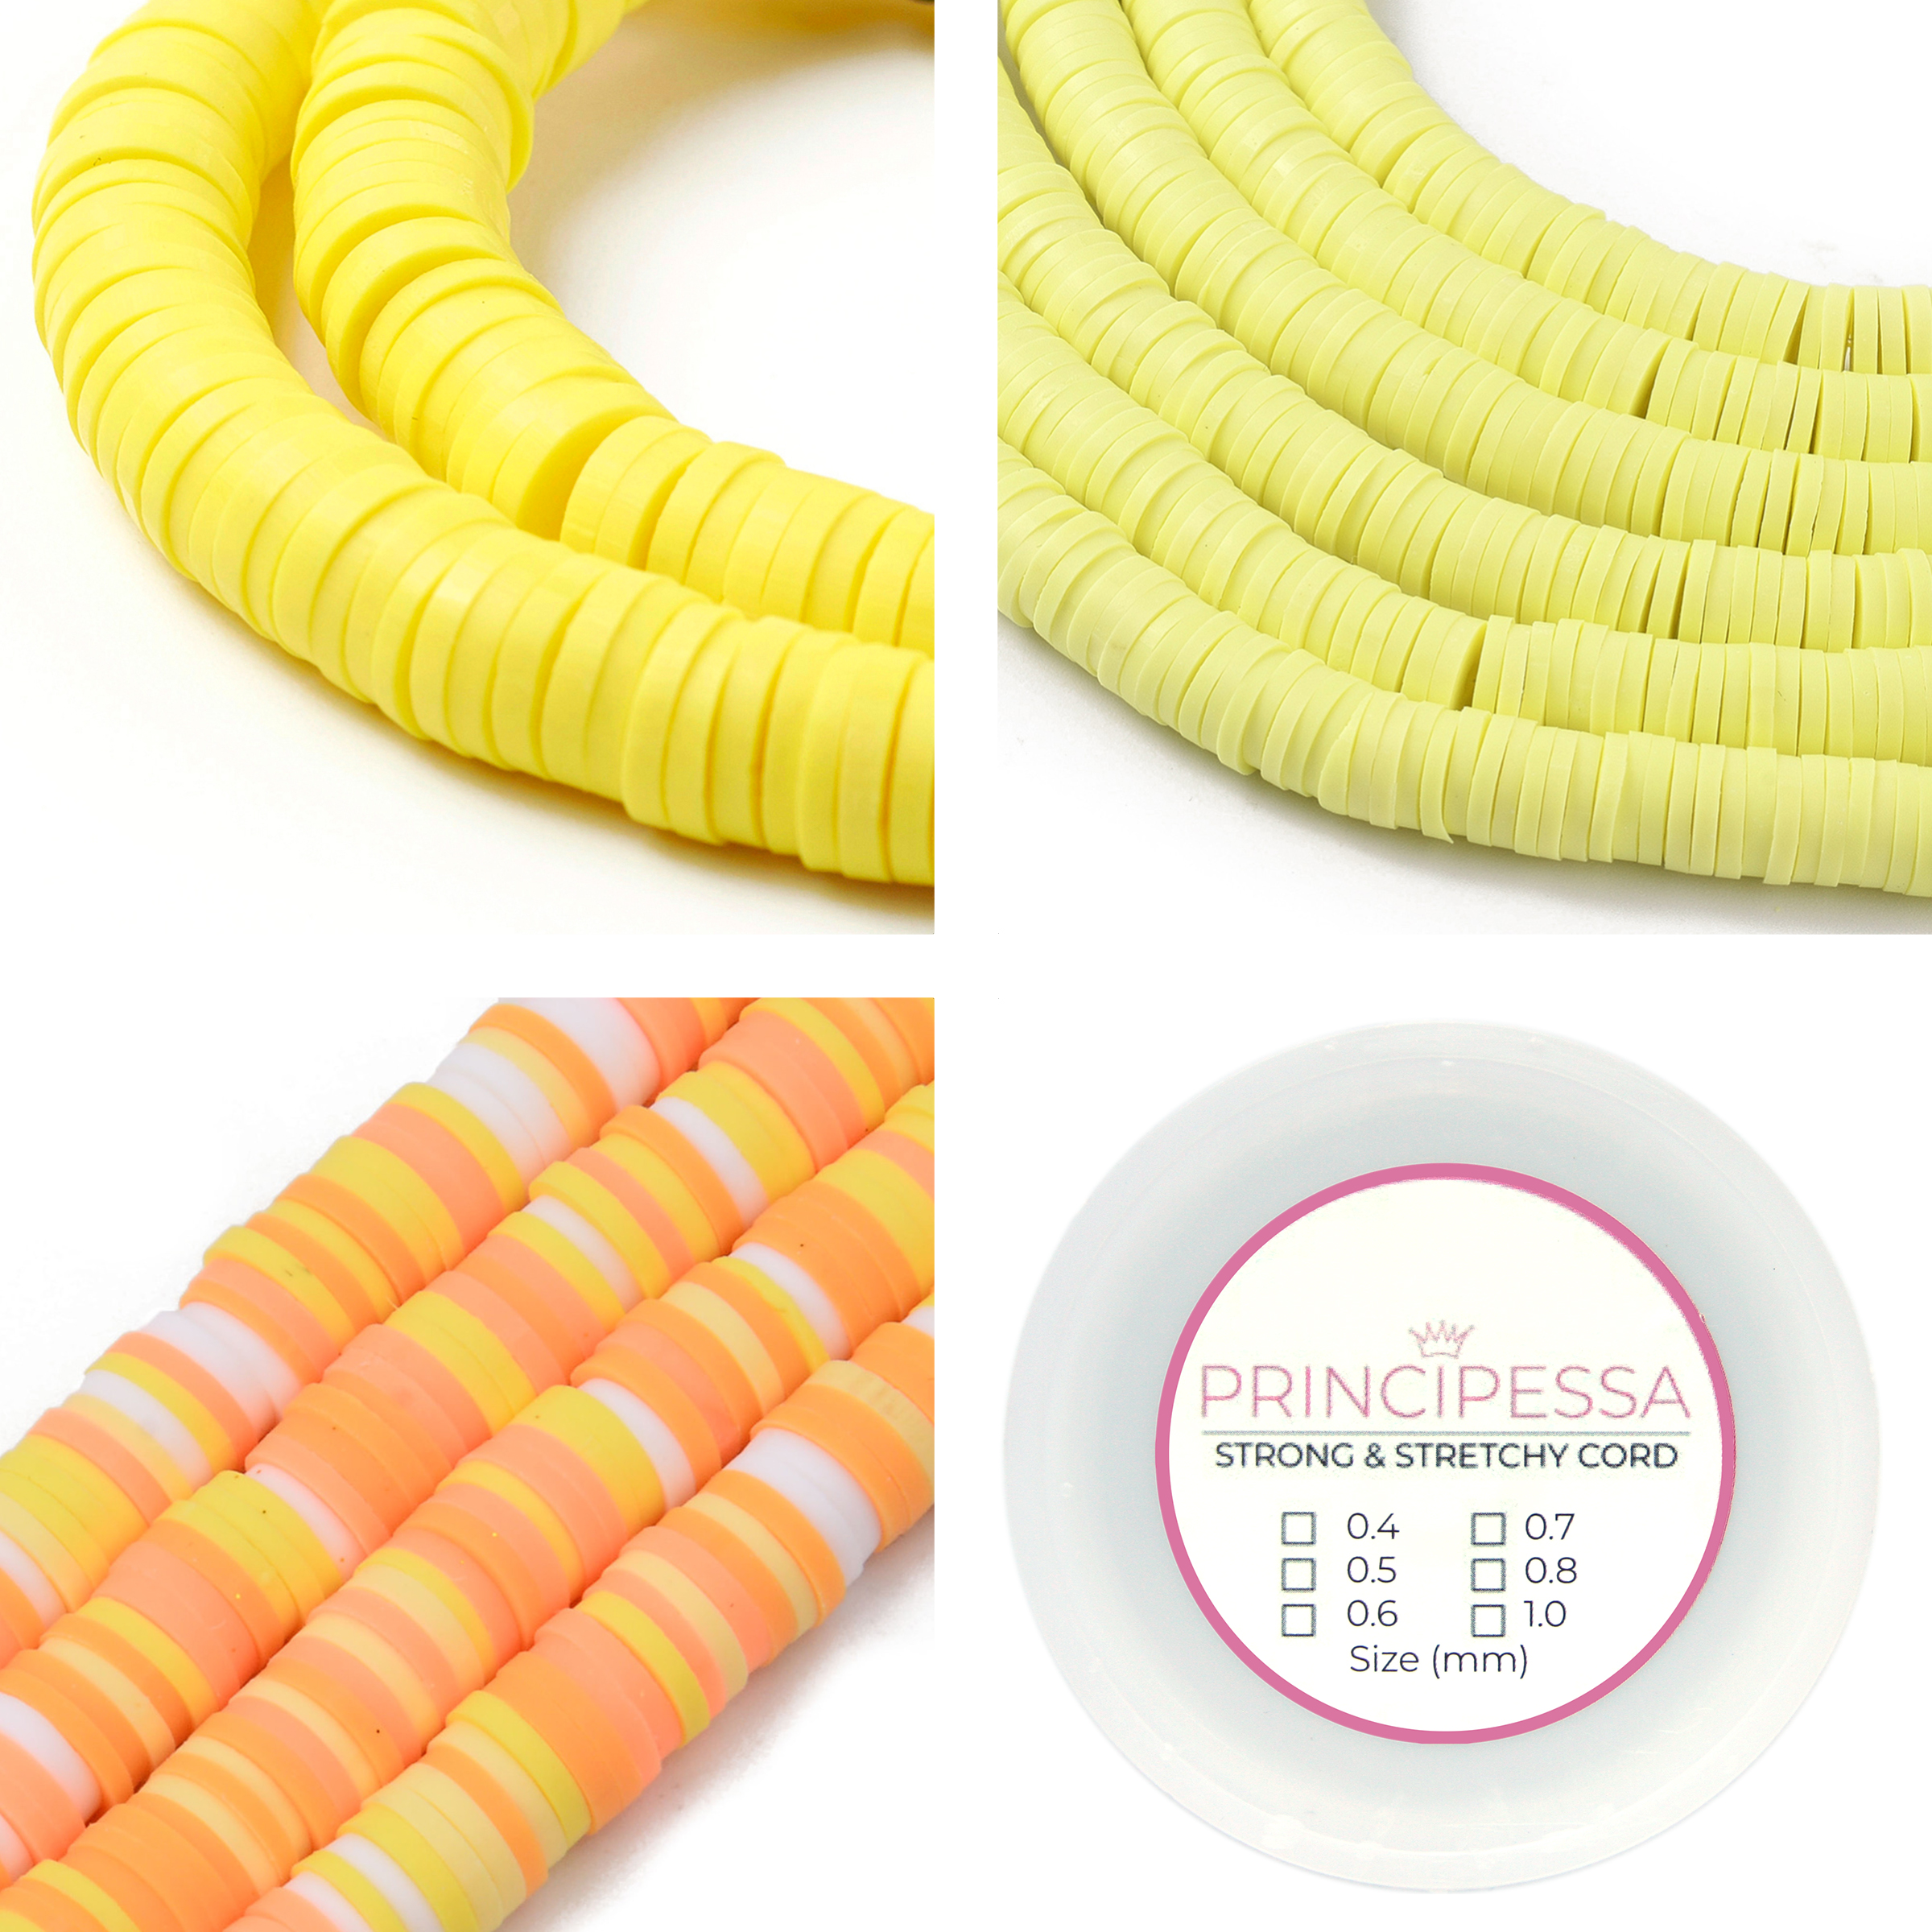 Principessa Katsuki kralen met rol elastiek – Maisgeel, Geel, Geel/Oranje-mix – 1.150 kralen – Polymeer klei – 6mm kralen